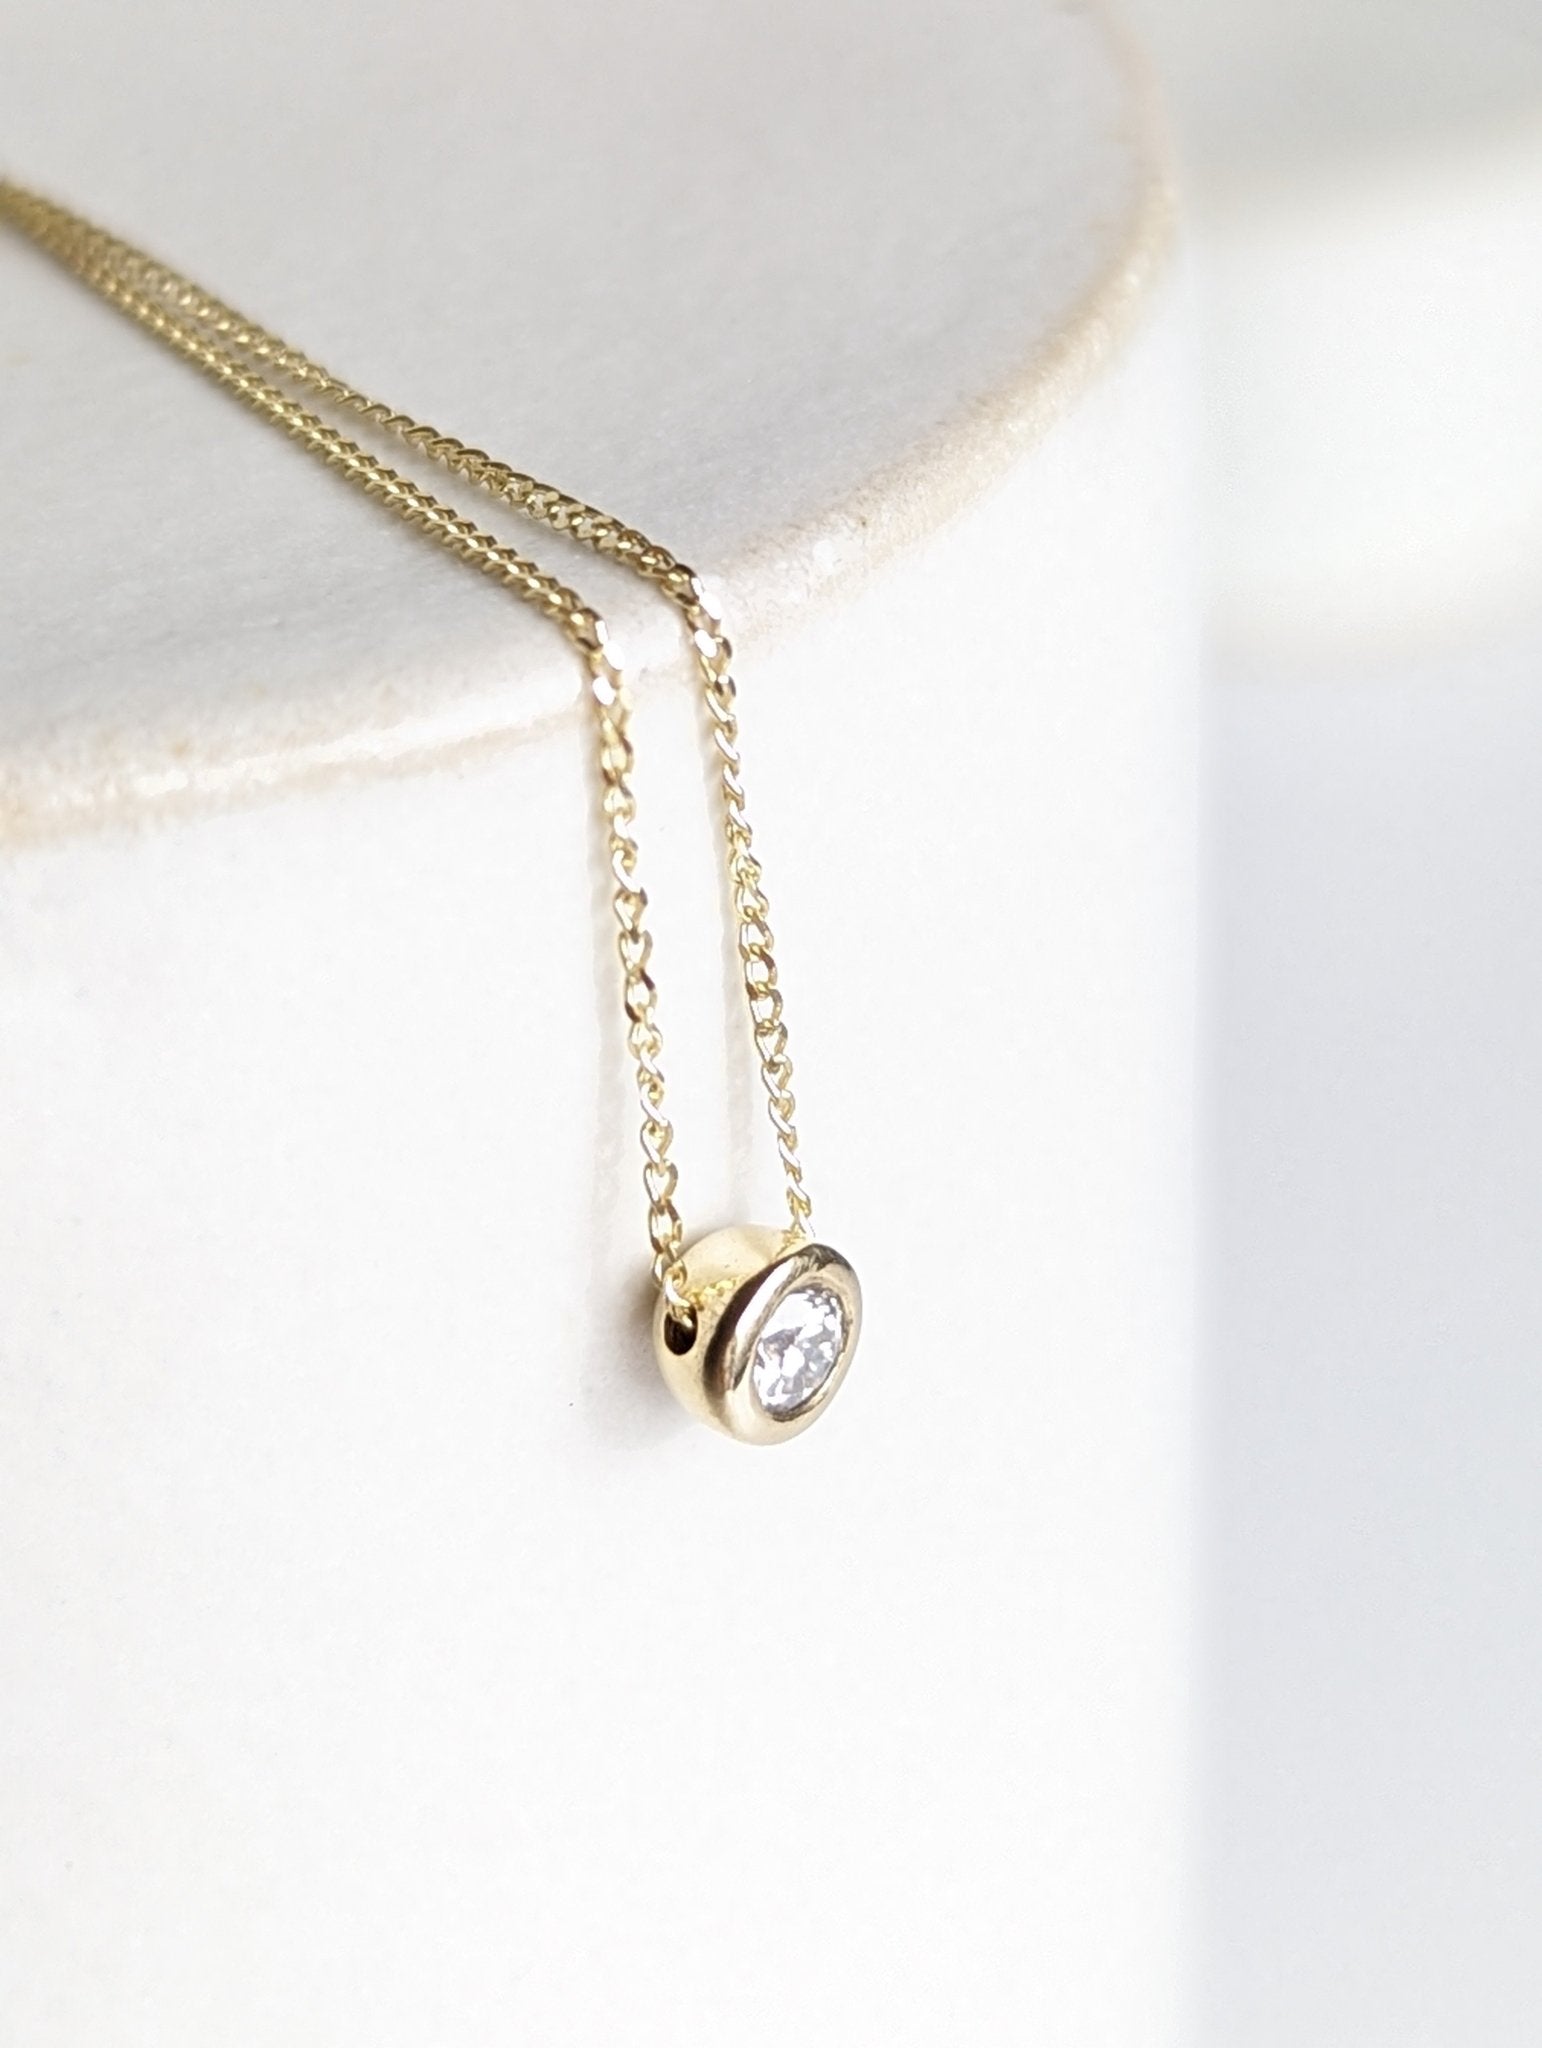 Delicate gold DEI necklace with moissanite - Booblinka Jewellery